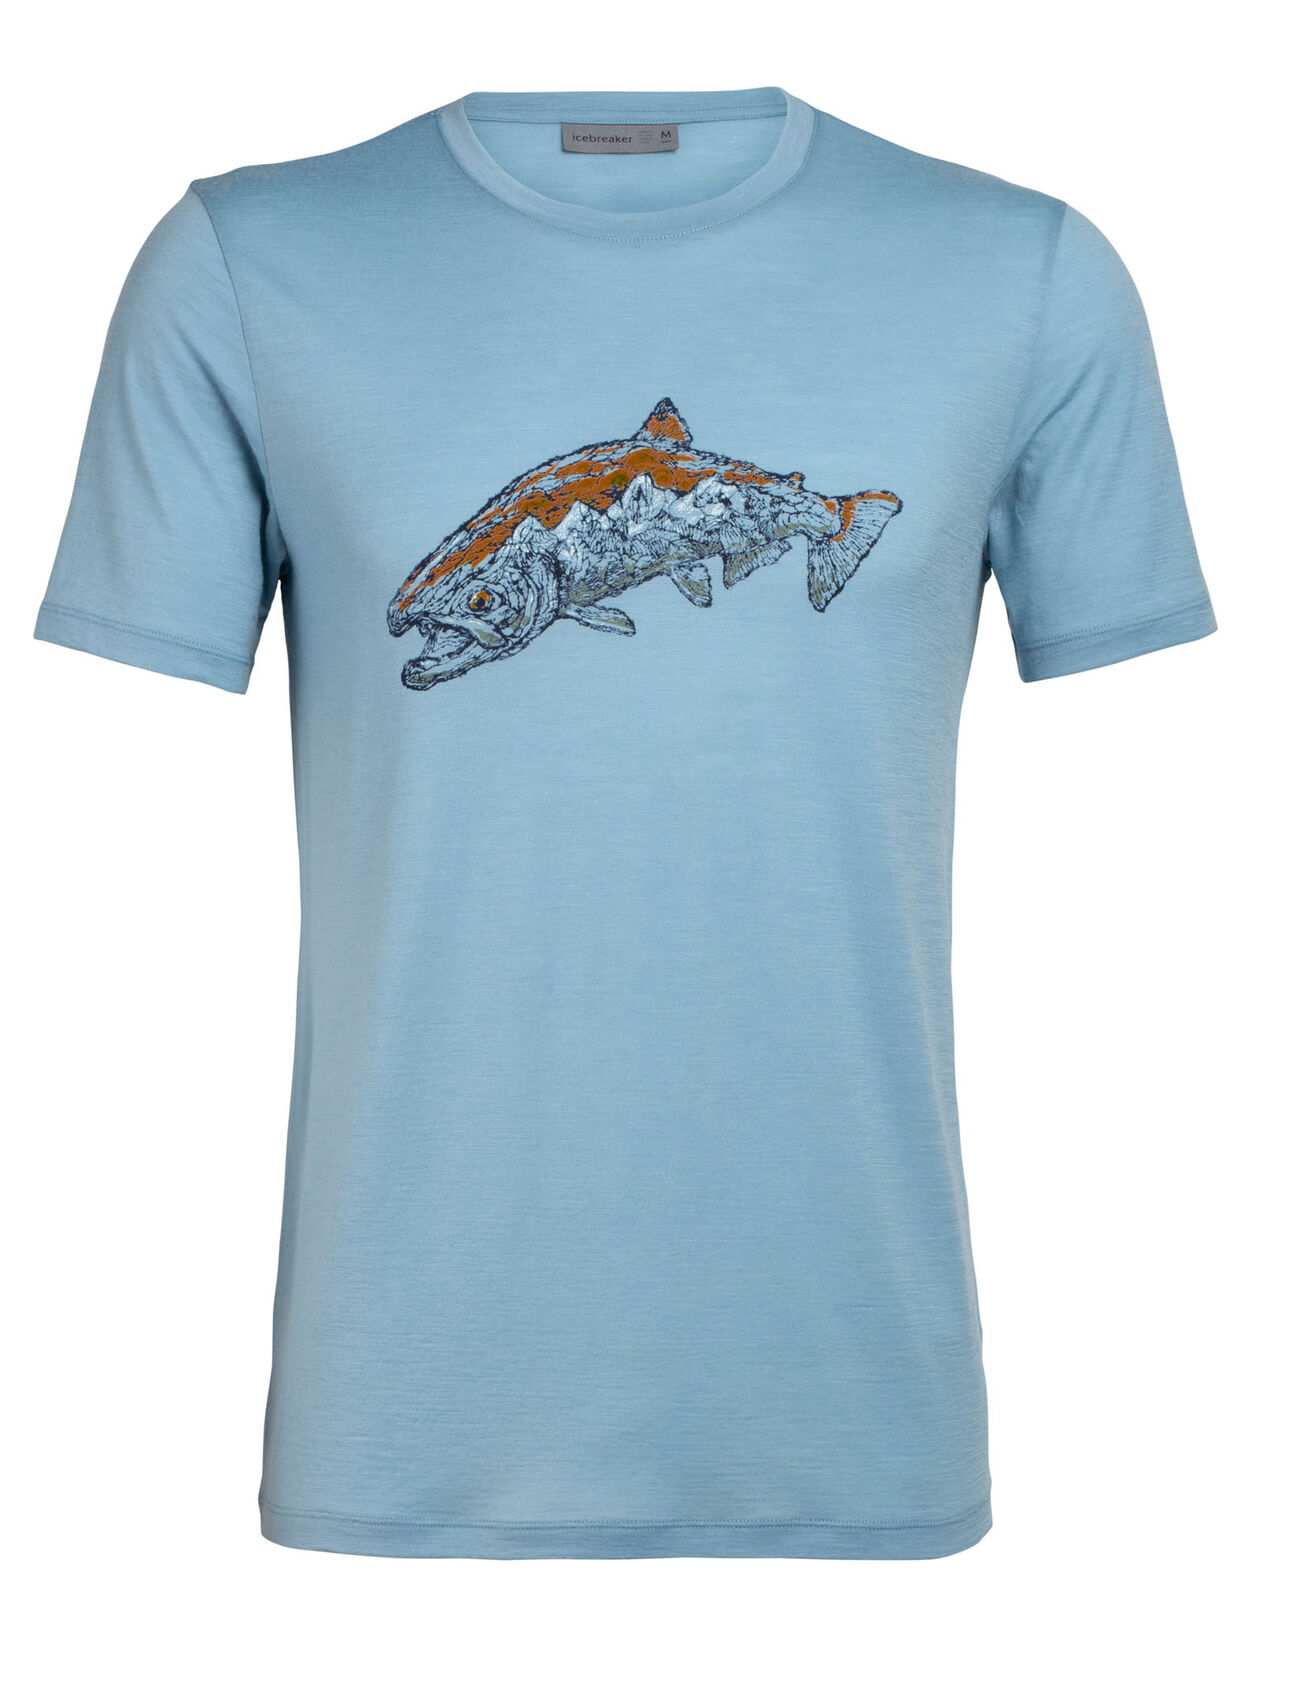 T-shirt Haut col rond Tetons Salmon tech lite en mérinos